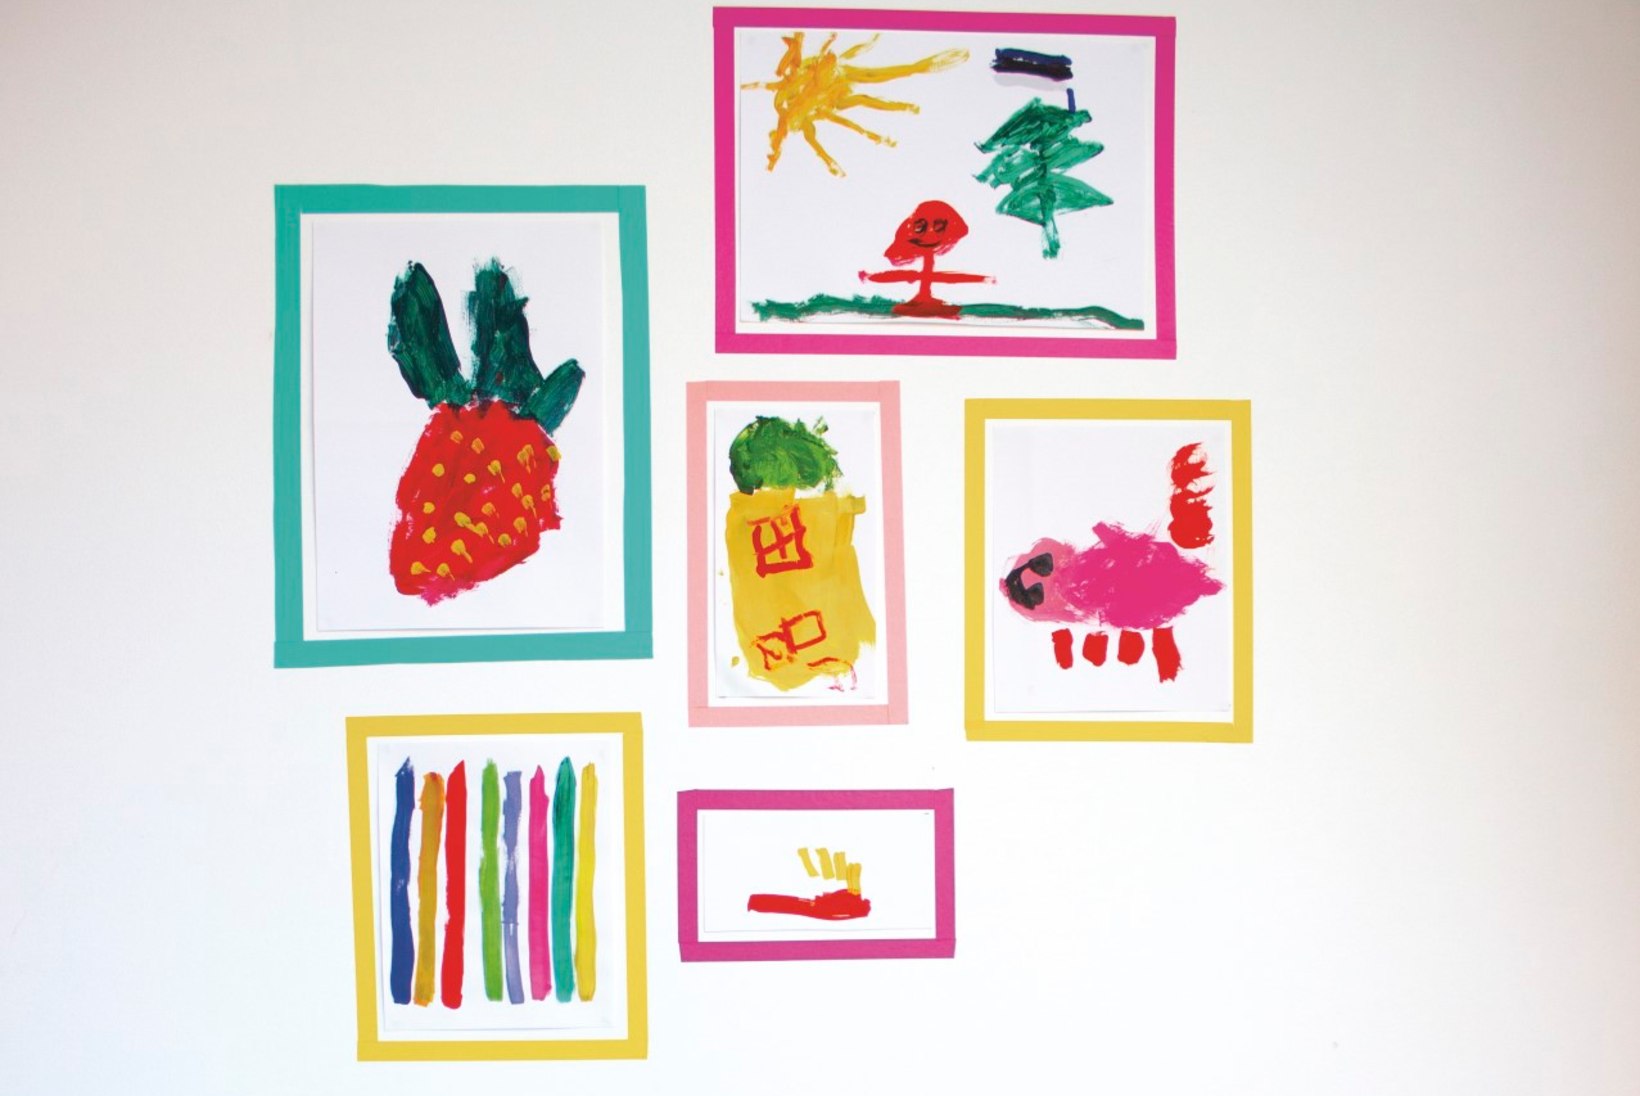 Vahvad mälestused! 10 ideed, kuidas laste kunstitööd vaid tolmu ei koguks 